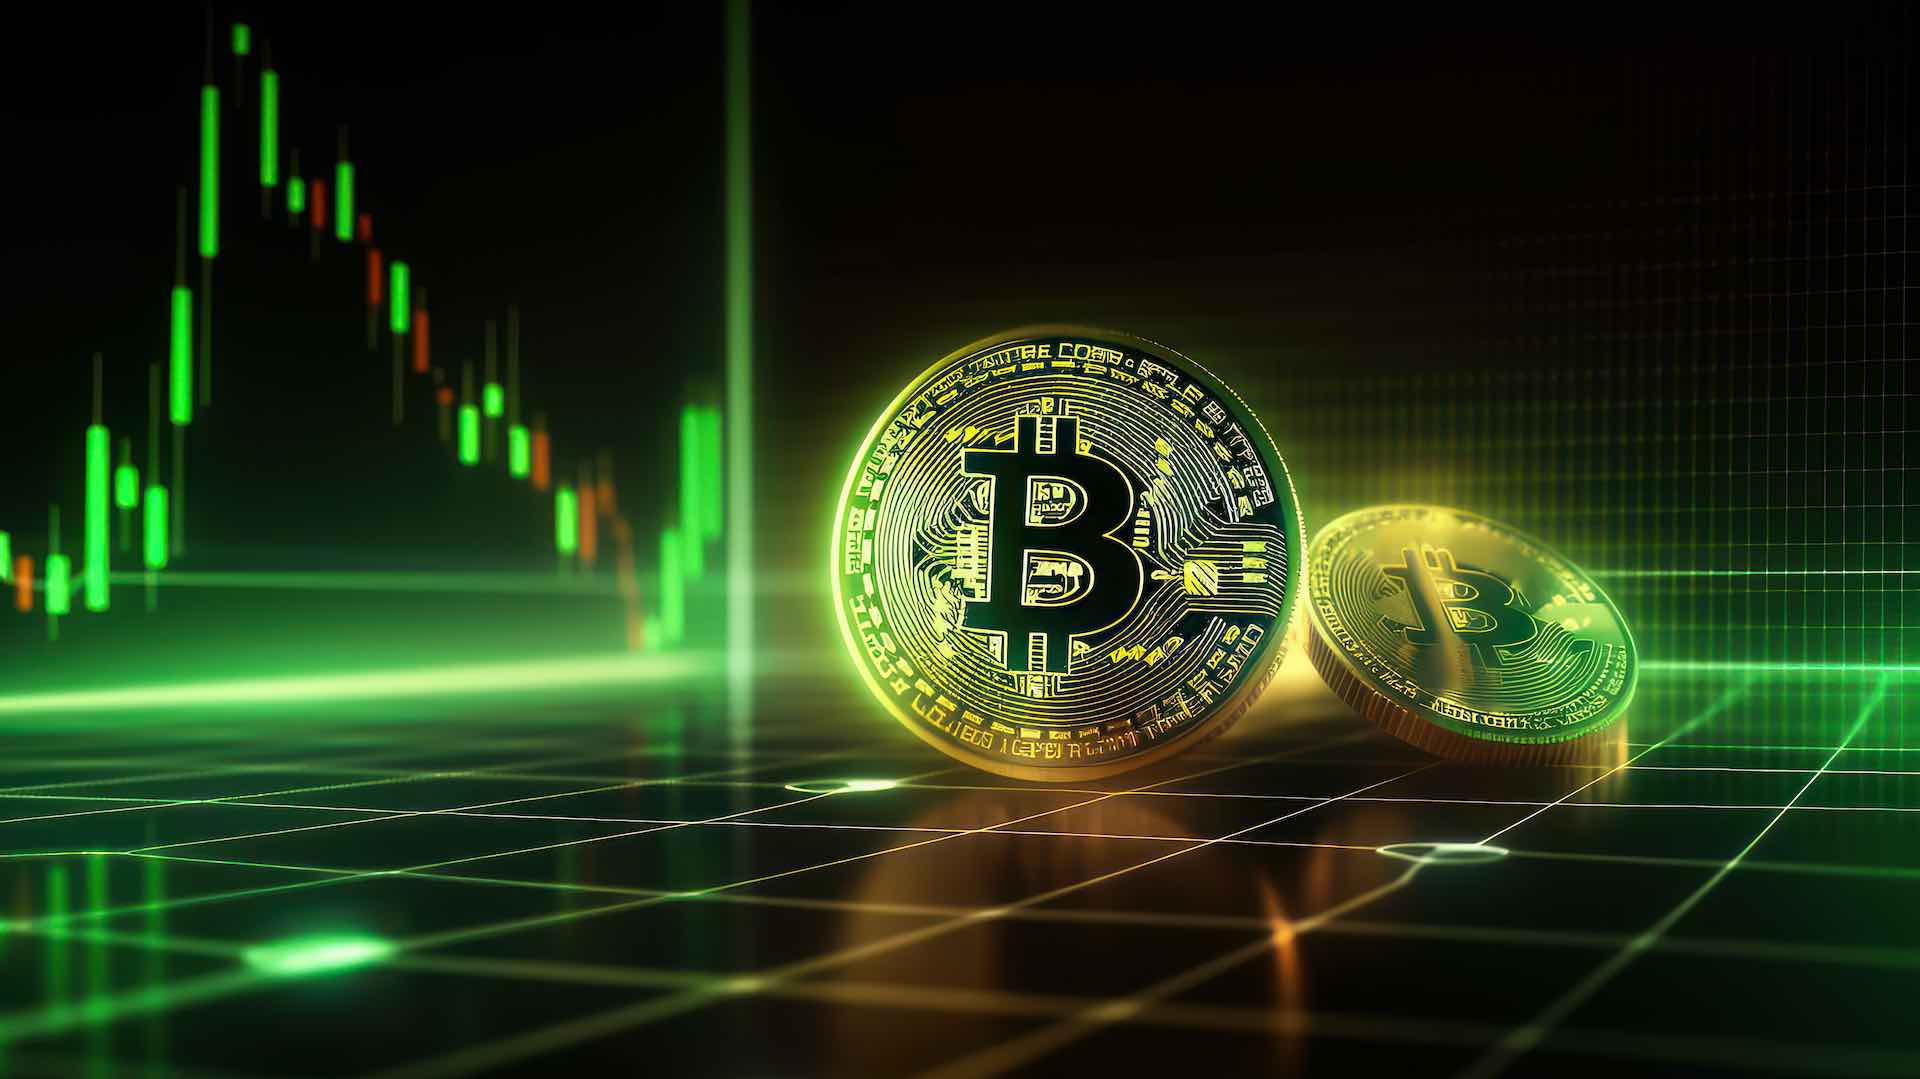 Bitcoin's volatility sparks $400 billion crypto market value drop